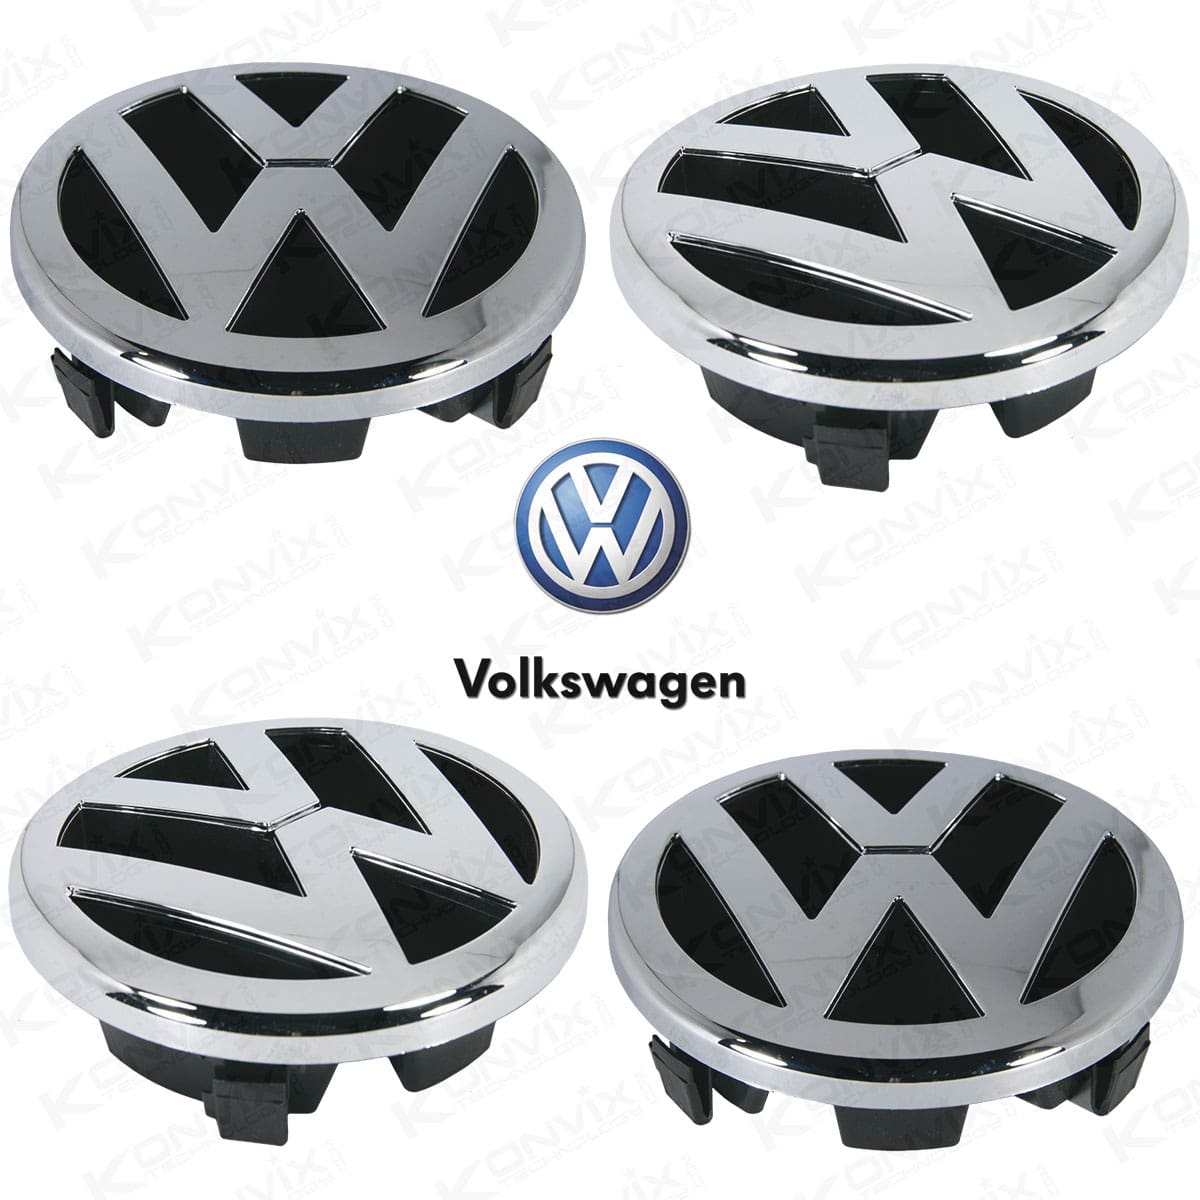 Emblème avant de Volkswagen Golf 5 Chrome 125 mm de diamètre